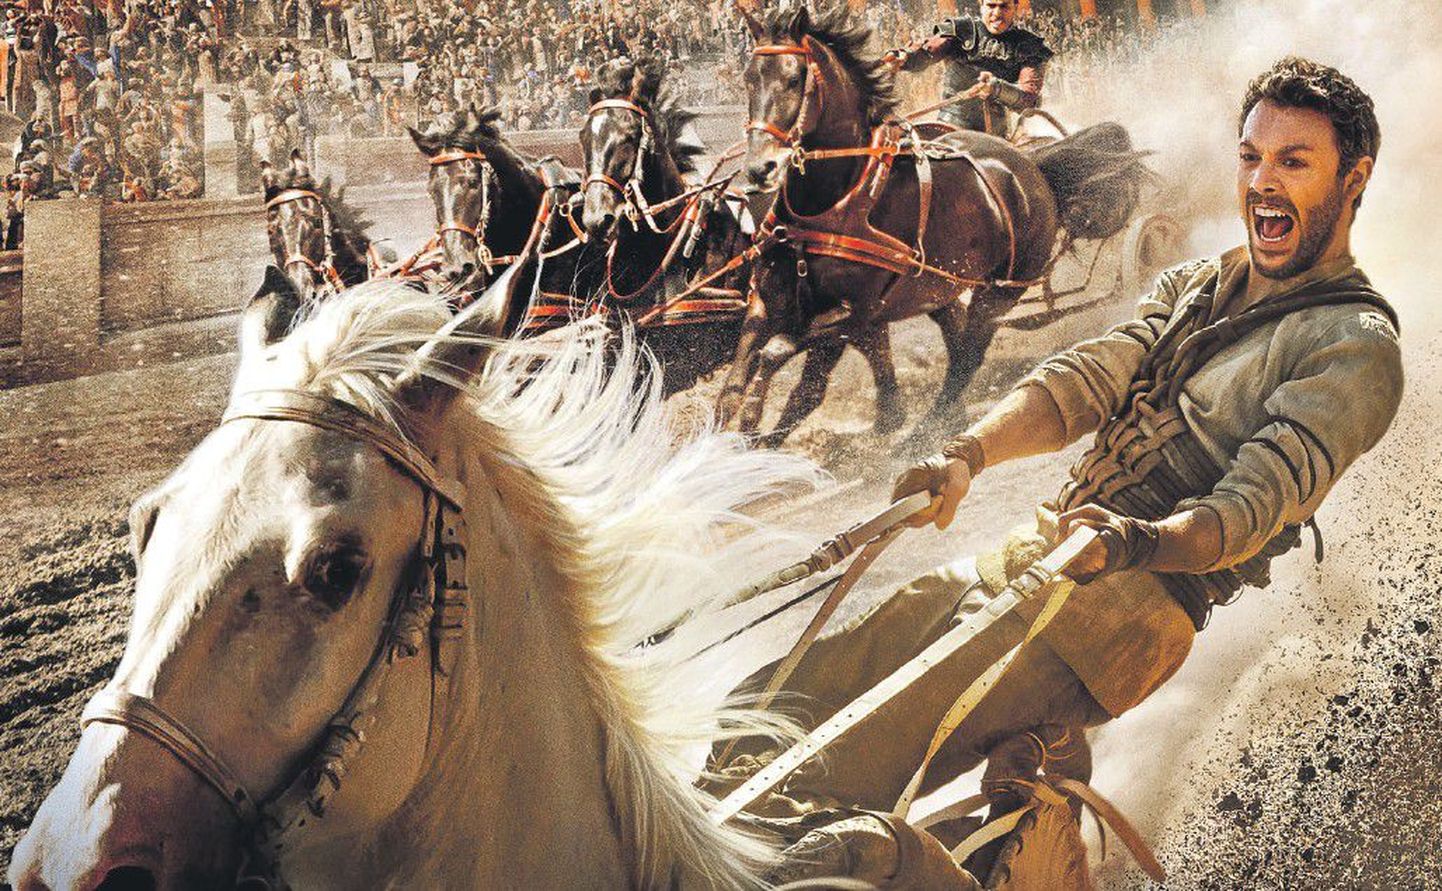 Гонка колесниц: римлянин Мессала (Тоби Кеббел) против иудея Бен-Гура (Джек Хьюстон).